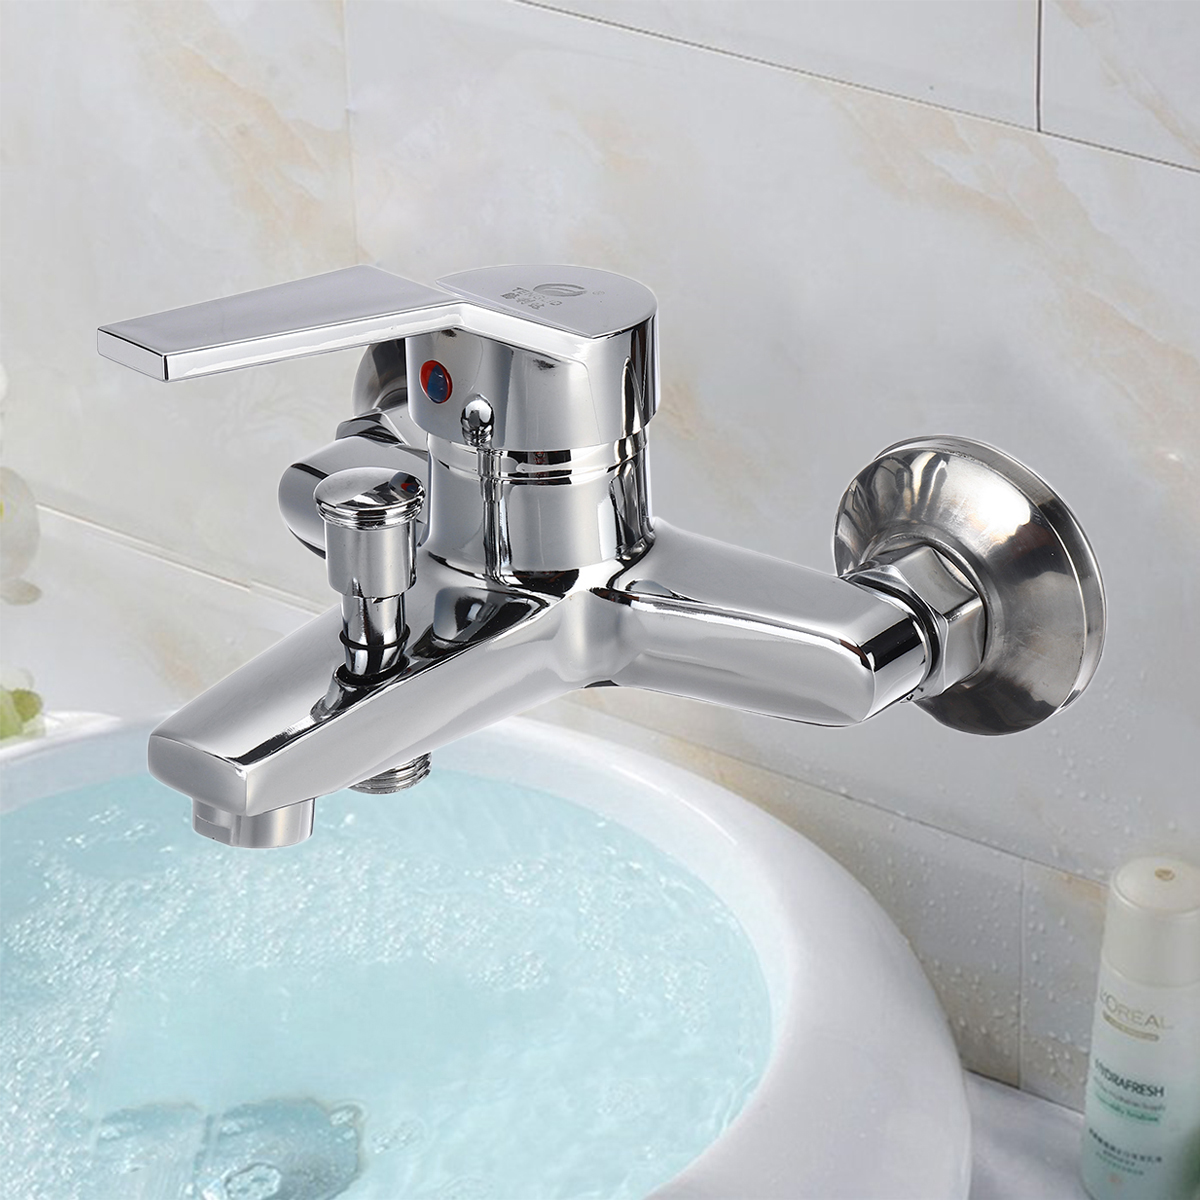 

Bathroom Tub Shower Faucet Wall Mount Shower Bath Faucet Valve Mixer Tap